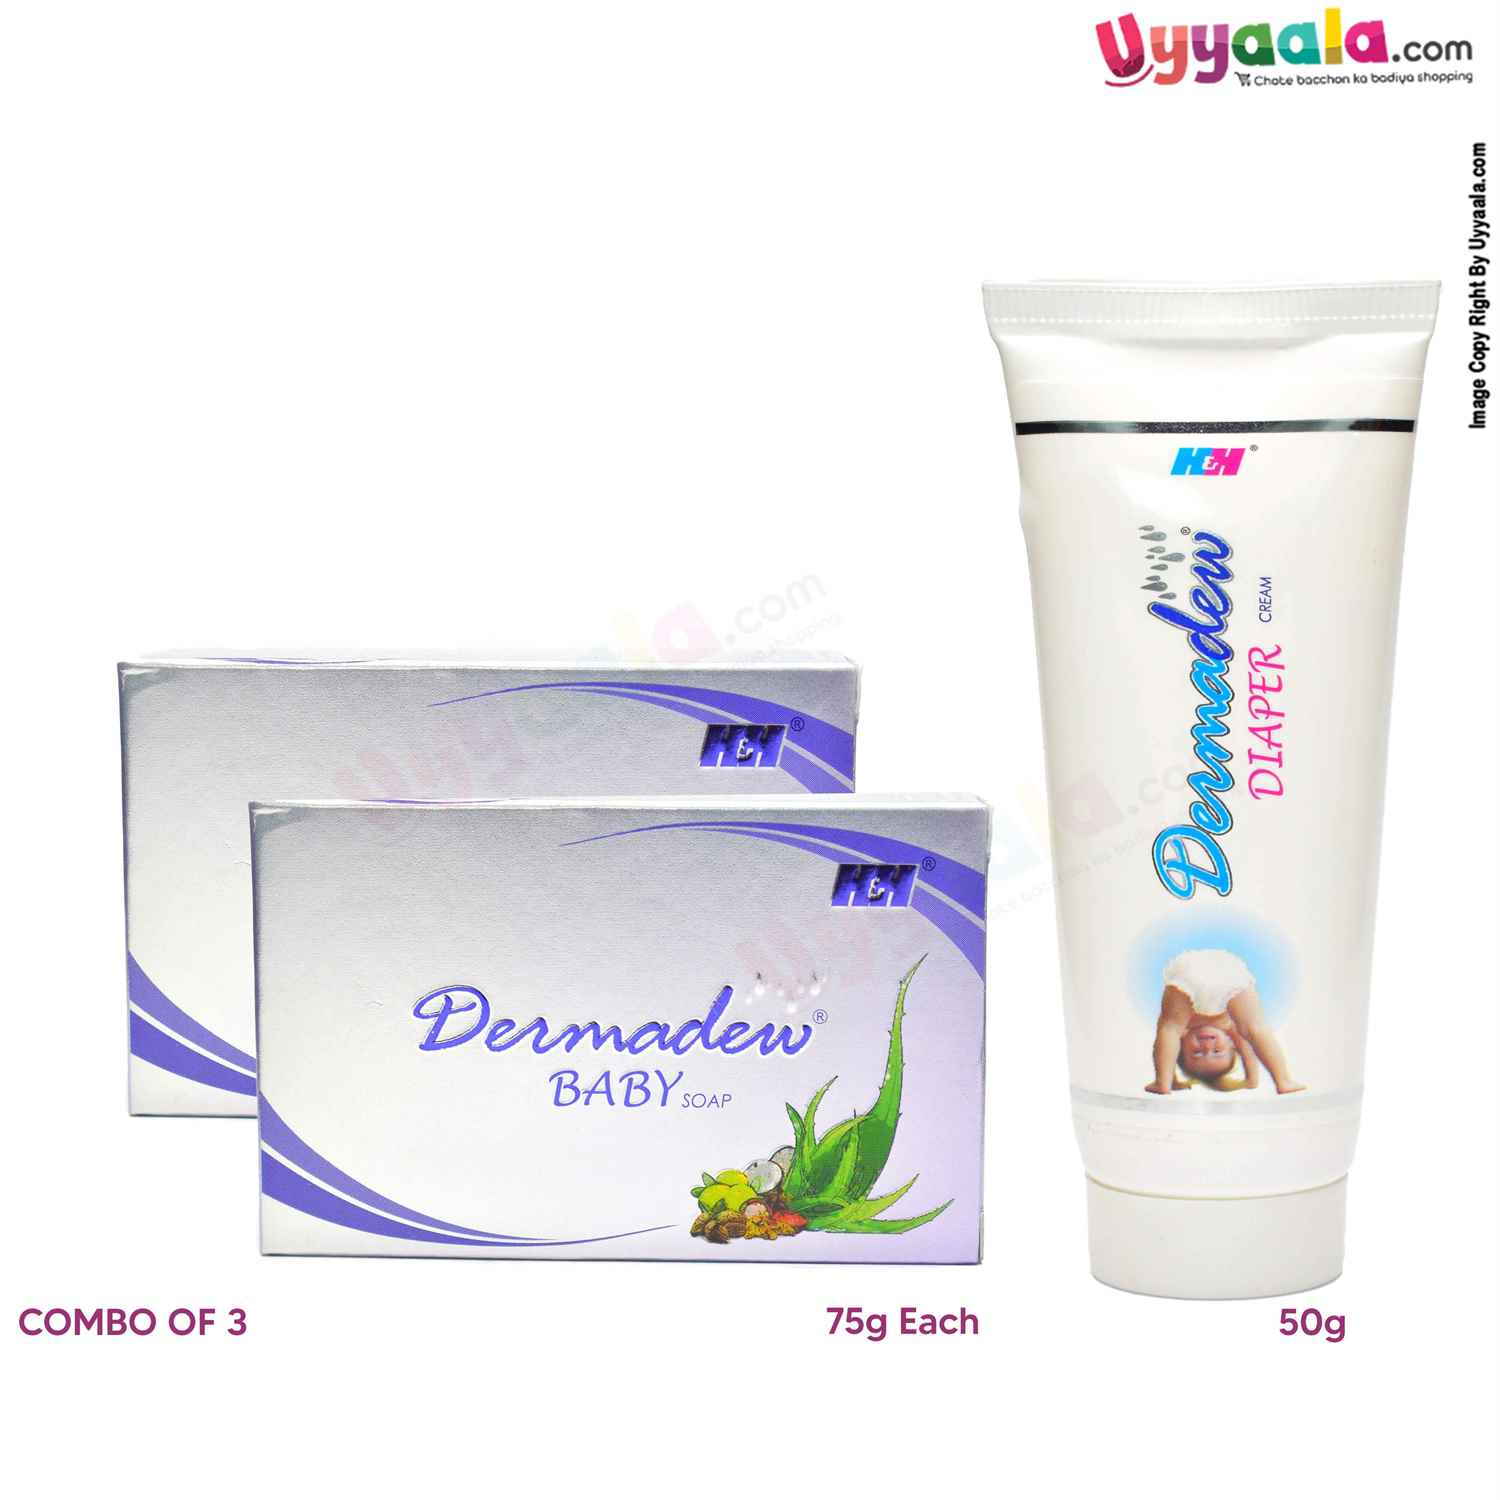 DERMADEW Soap 75g Pack of 2 & Diaper Rash Cream 50g ( Combo of 3 )